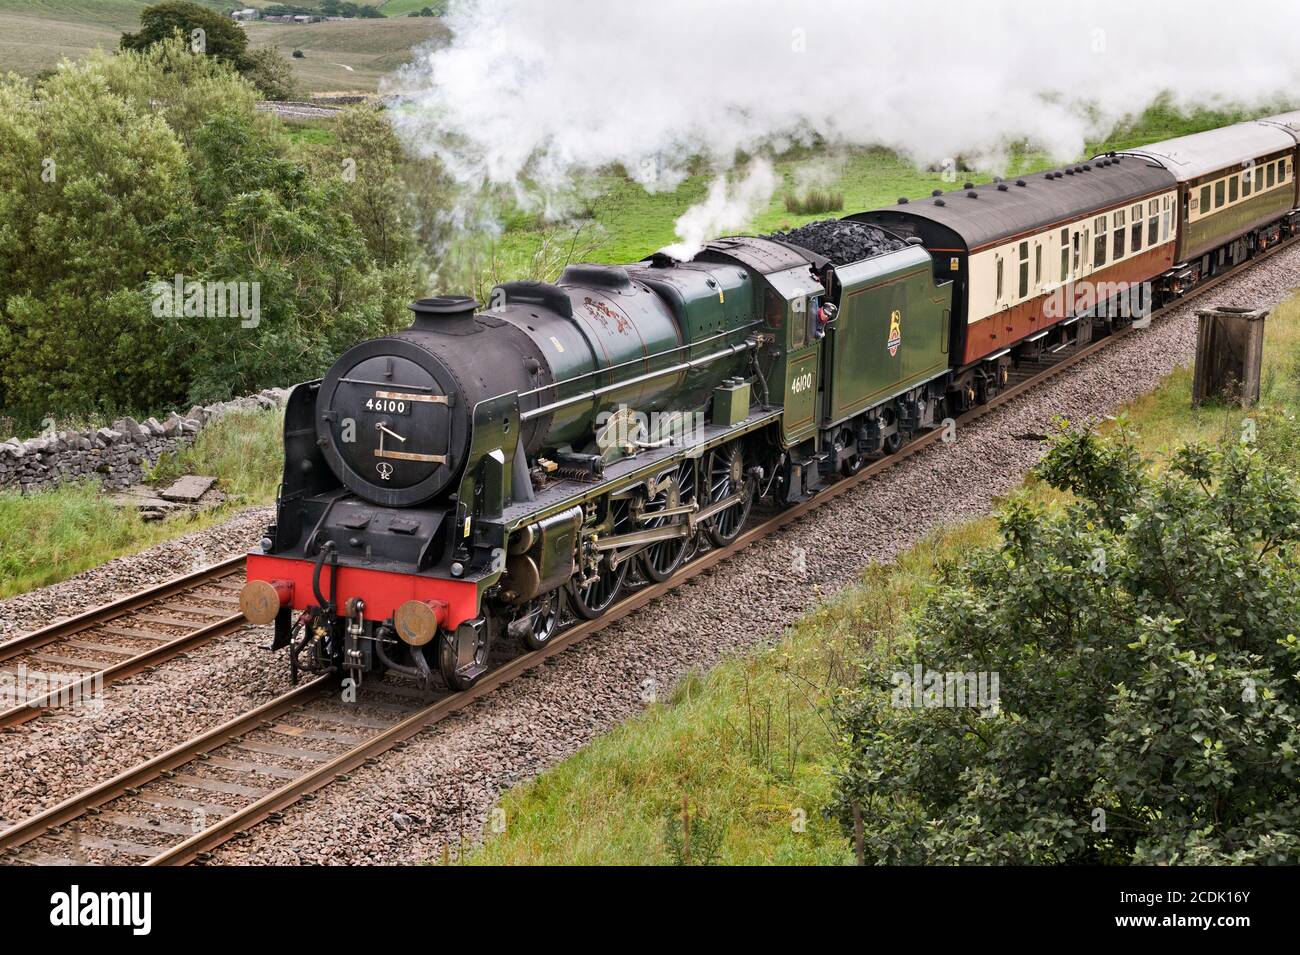 La locomotive à vapeur « Royal Scot » transporte le train « The Fellsman » sur la ligne de chemin de fer Settle-Carlisle, près de Ribblehead, dans le parc national des Yorkshire Dales. Banque D'Images